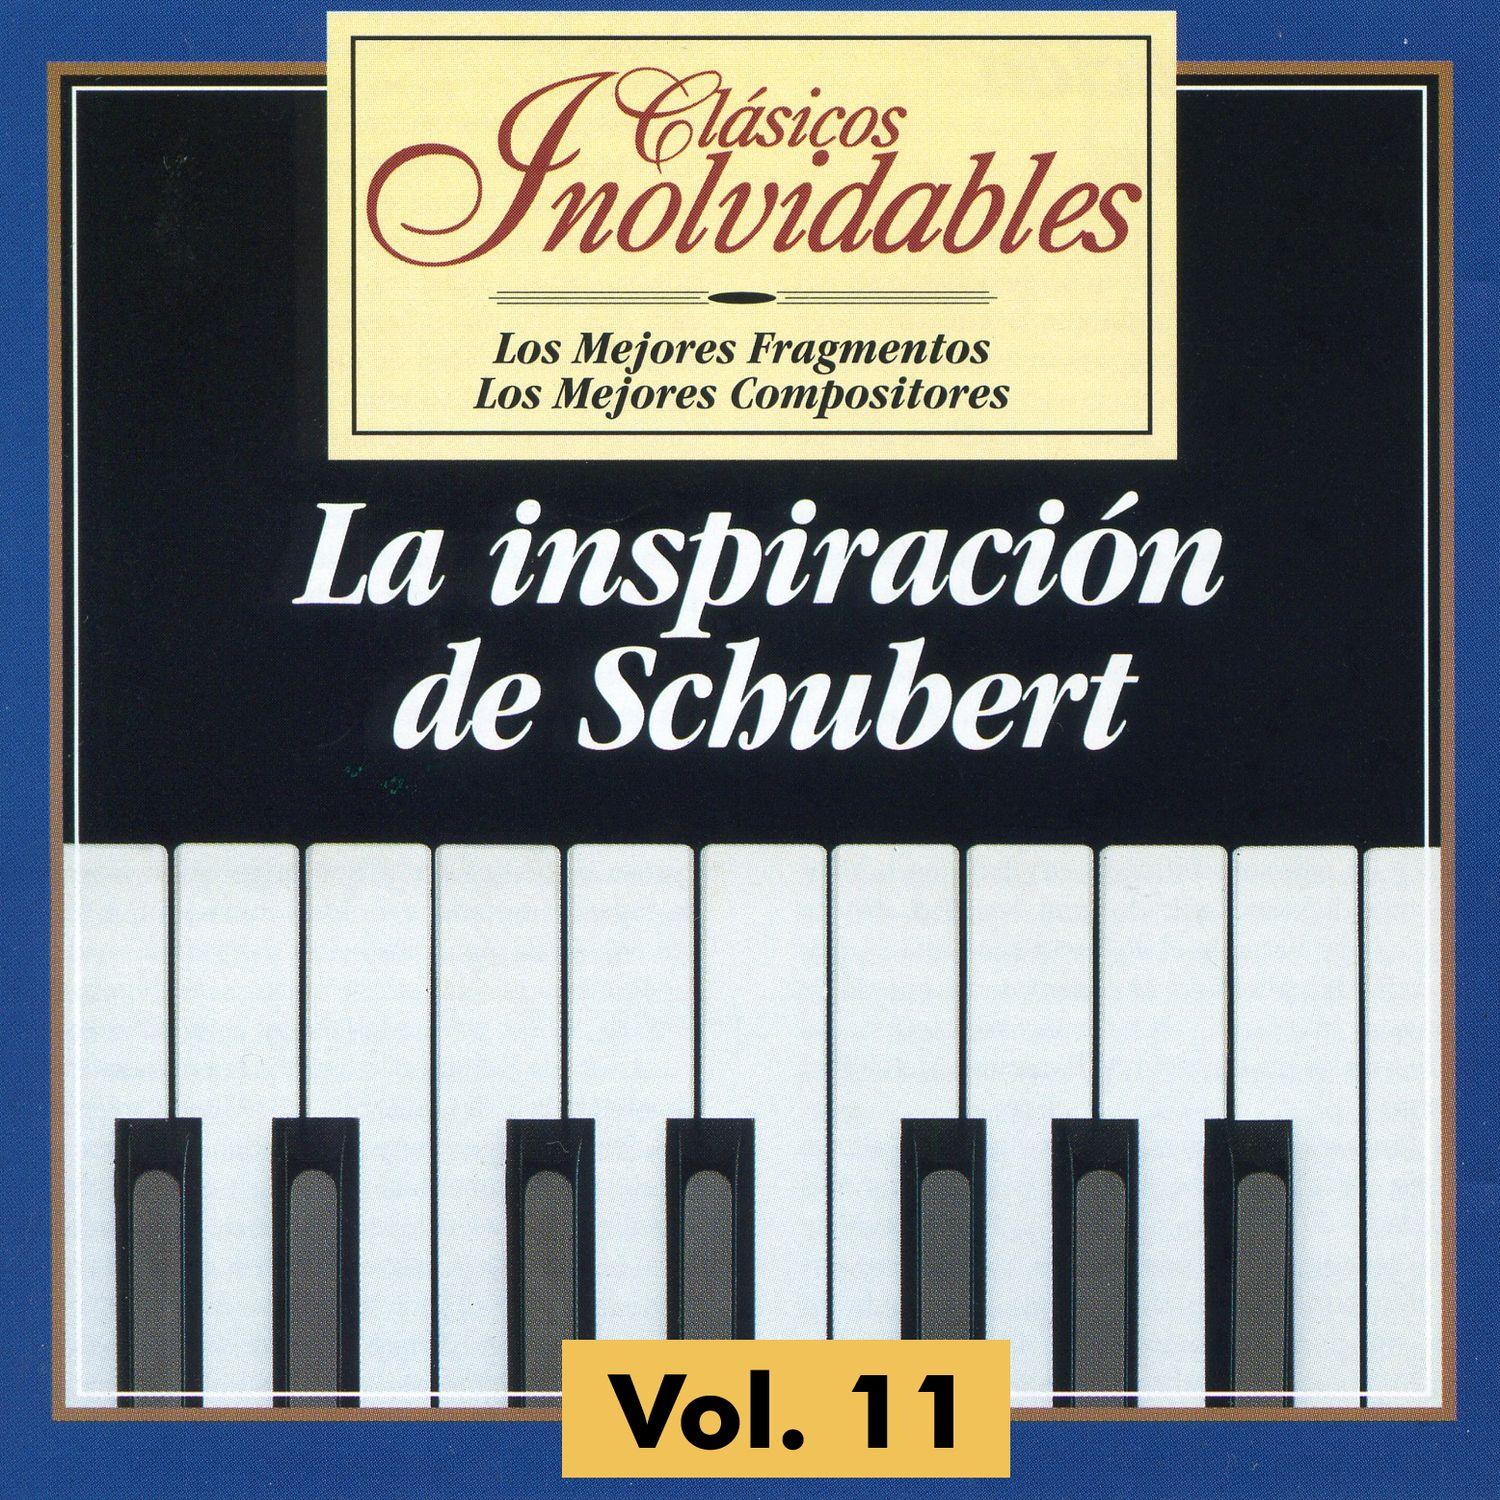 Cla sicos Inolvidables Vol. 11, La Inspiracio n De Schubert